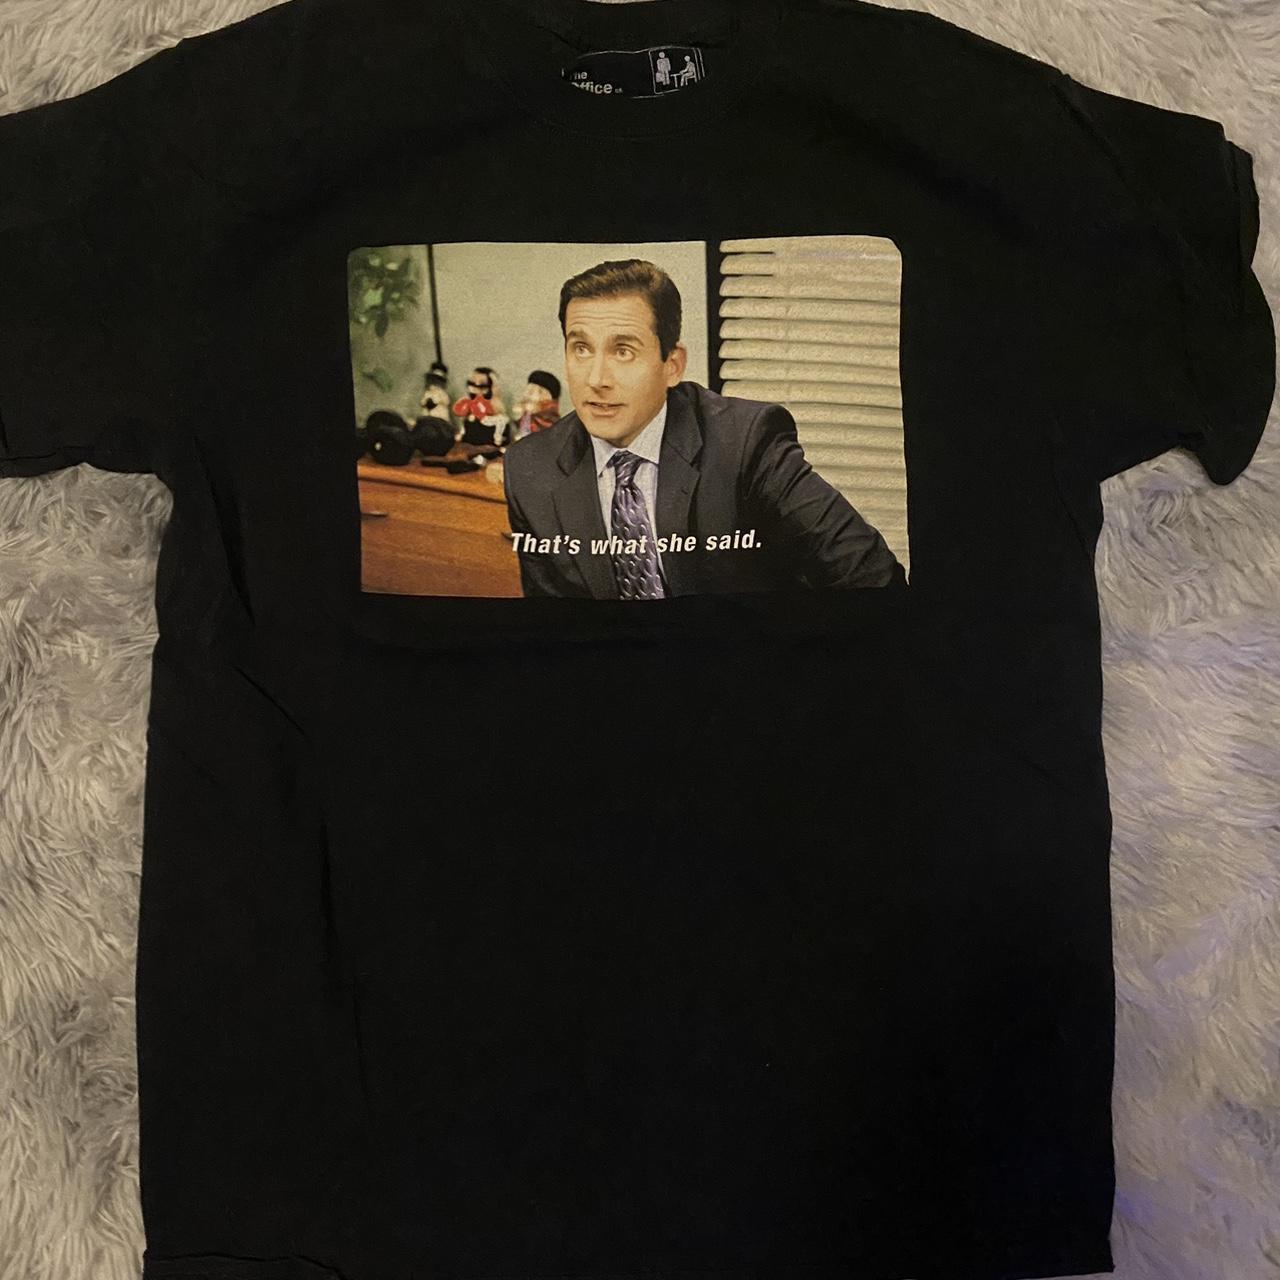 Office Men's Black T-shirt